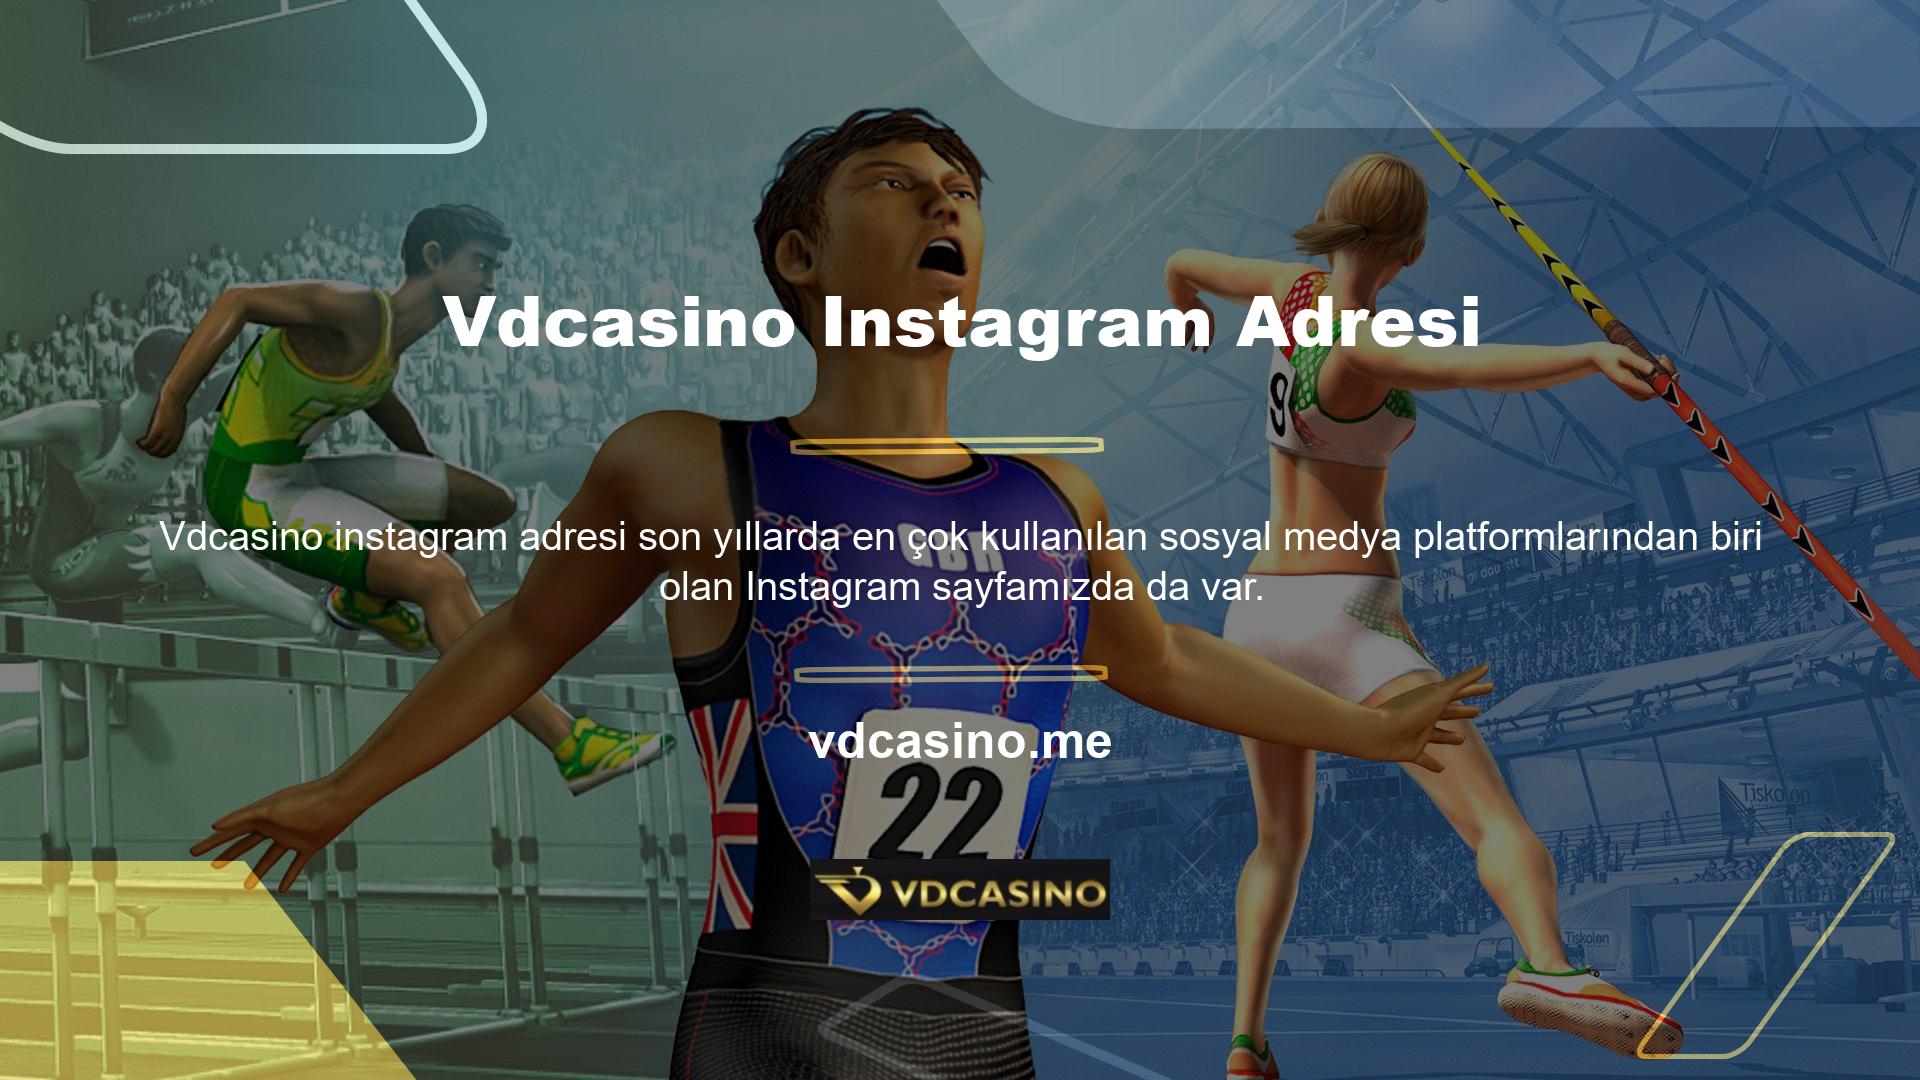 Vdcasino Instagram adresi için tıklayınız